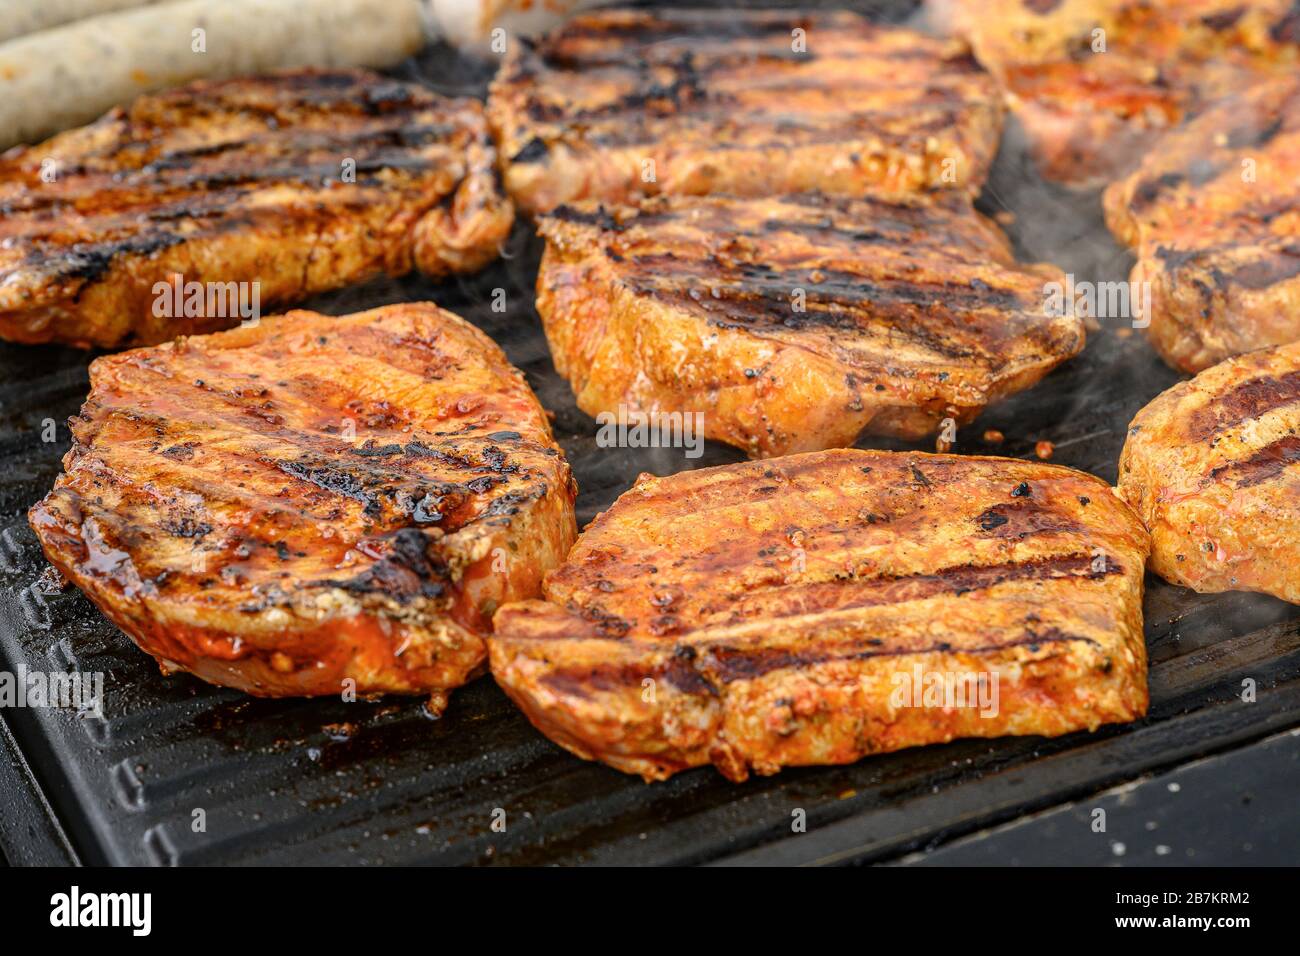 Grill BBQ auf Kohle Holzkohle Grill mit Steaks, Bratwurst Wurst und Fleisch  köstliche Sommer Mahlzeit Stockfotografie - Alamy